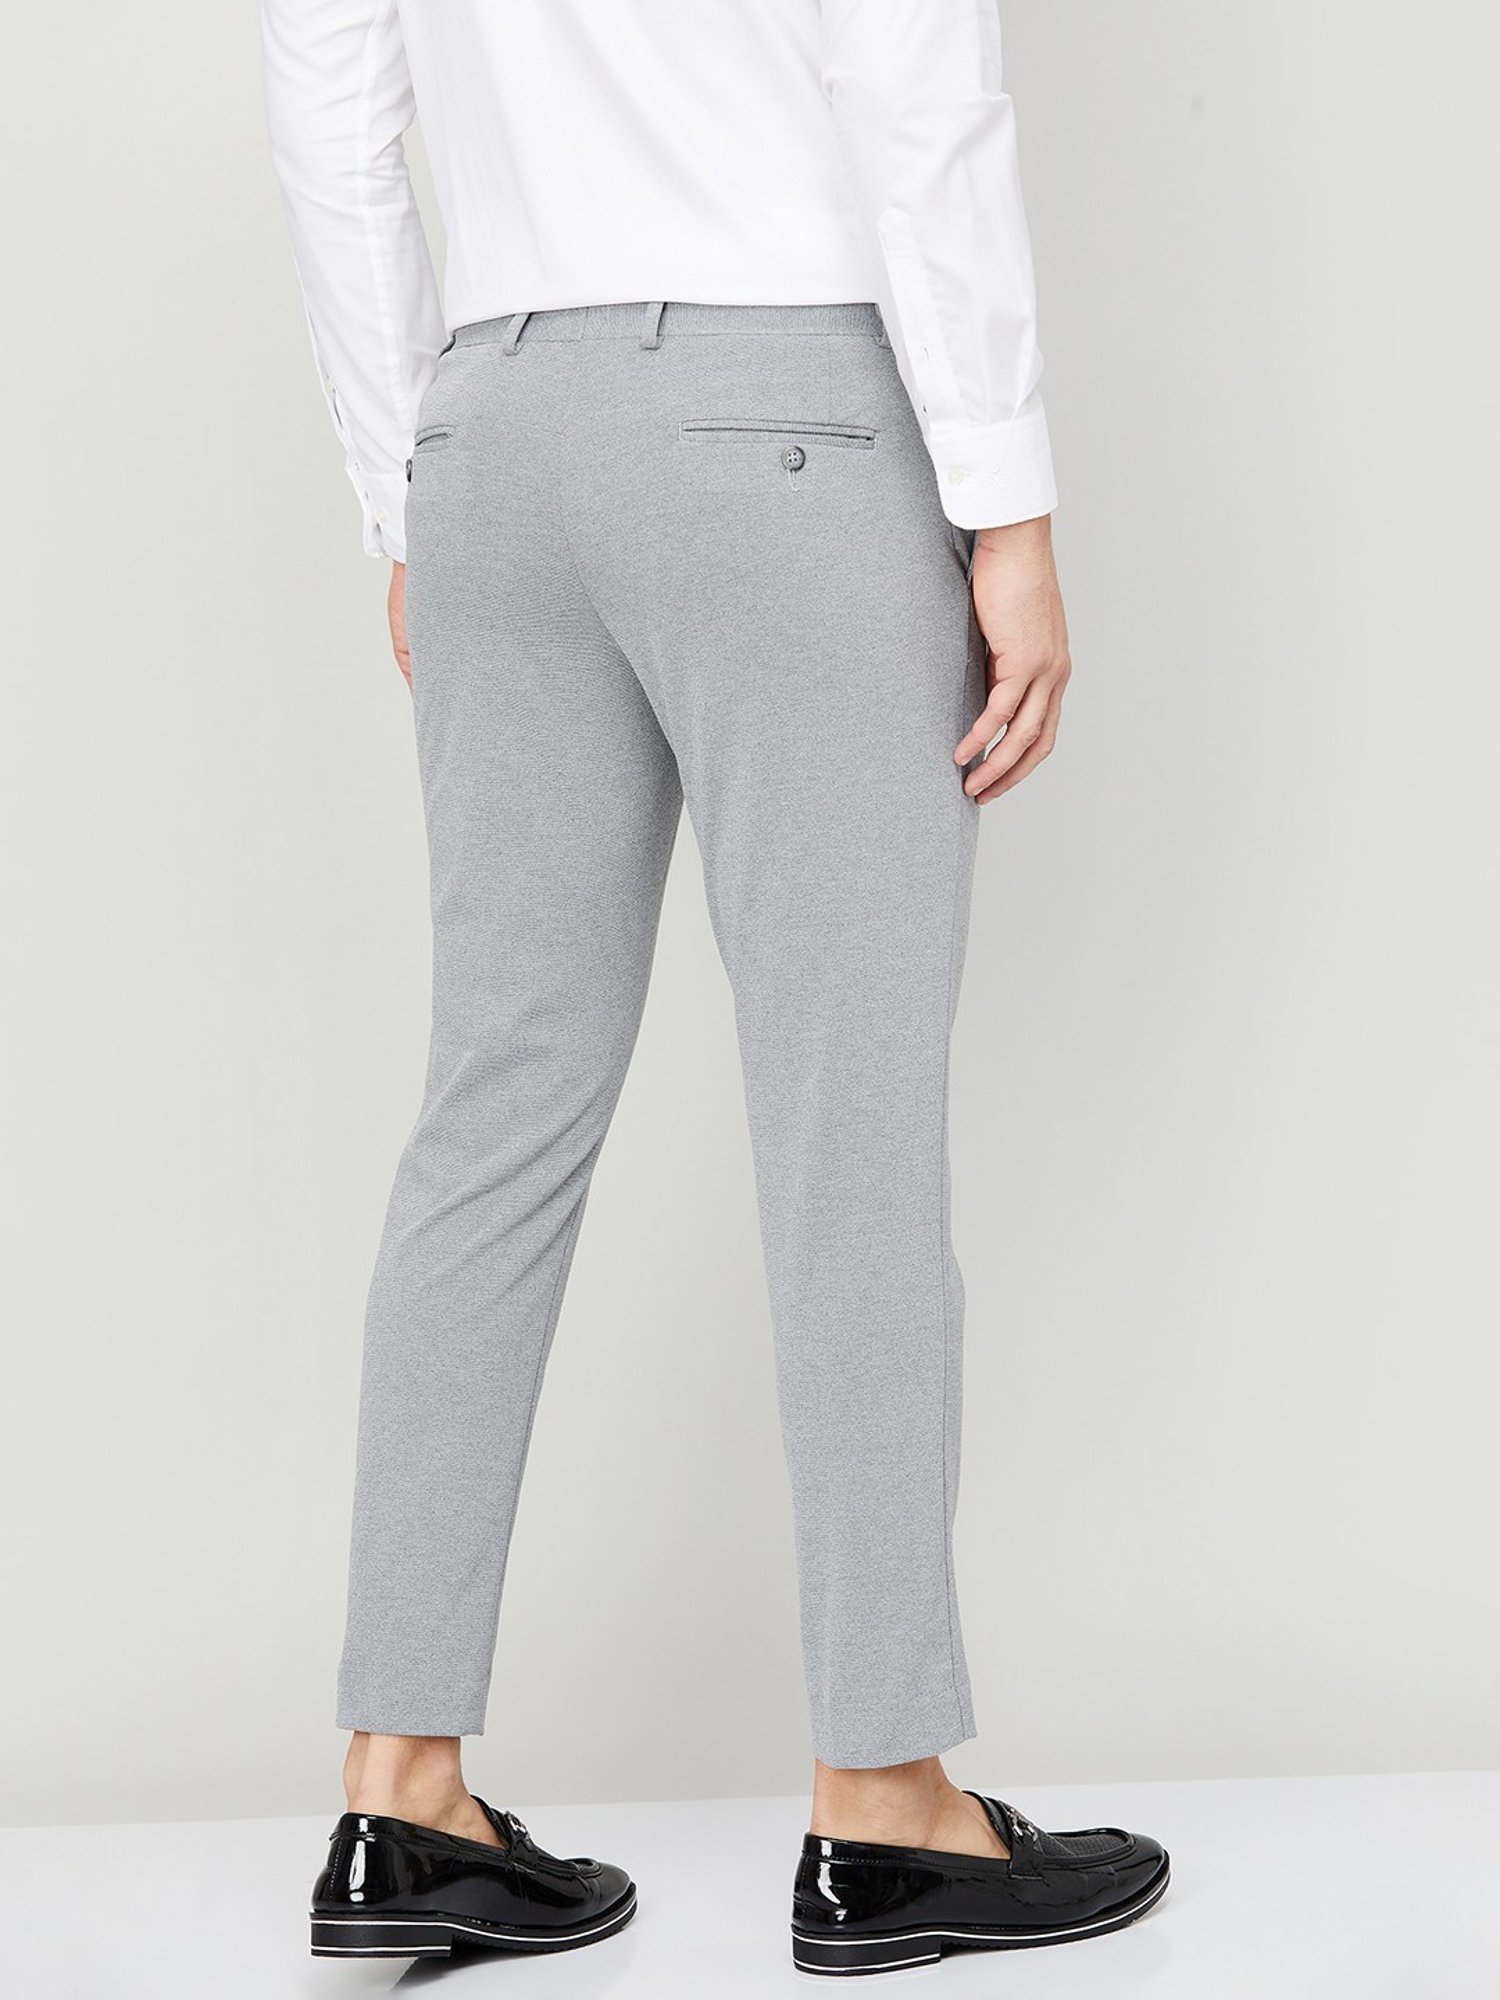 Wide-cut Side-slit Pants - Light gray - Ladies | H&M US